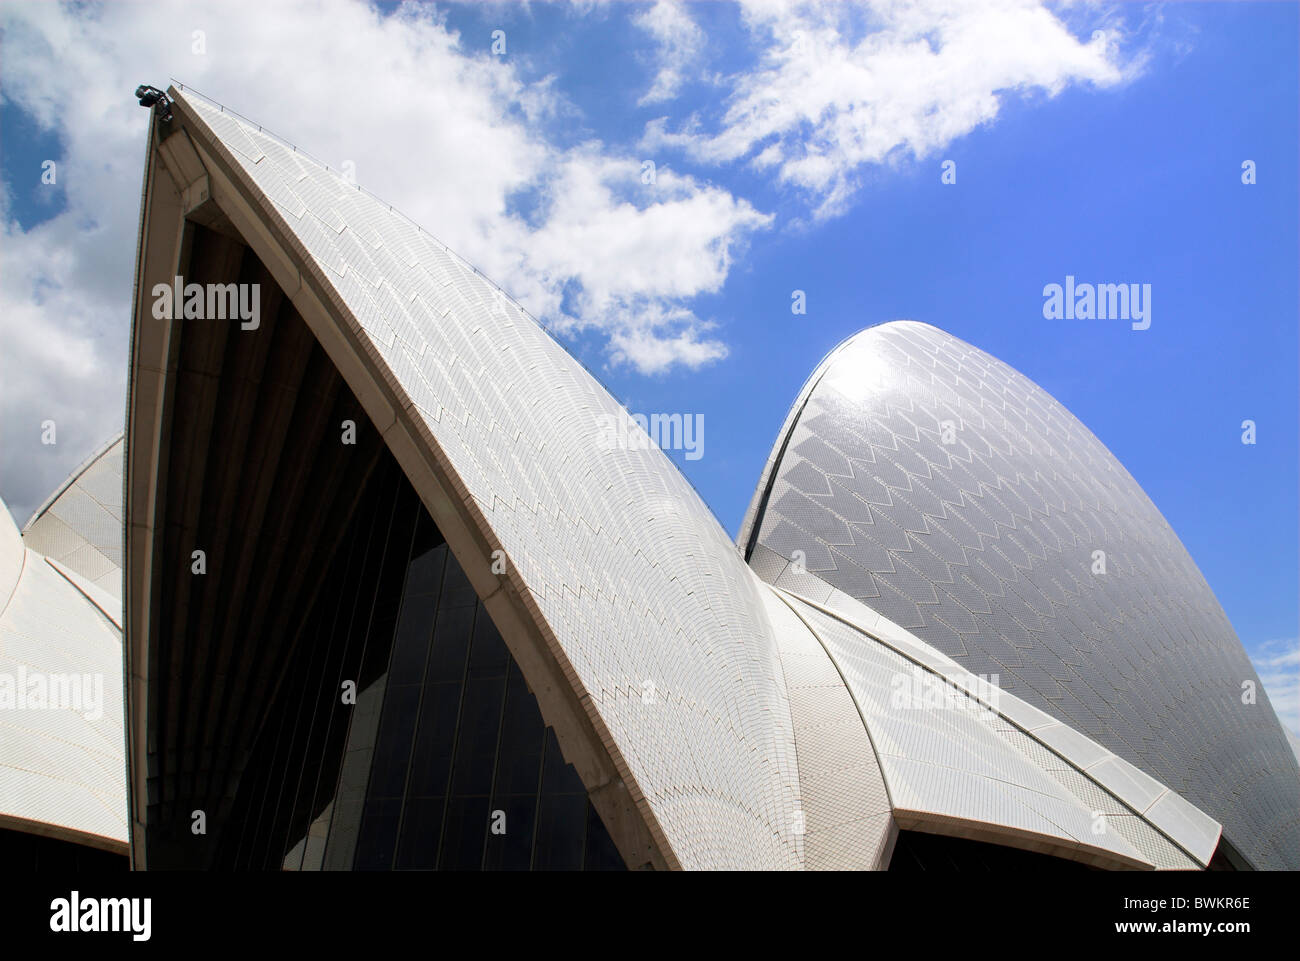 Australien Sydney Oper Opernhaus Architektur Dach UNESCO Welt Kulturerbe Wahrzeichen Stockfoto